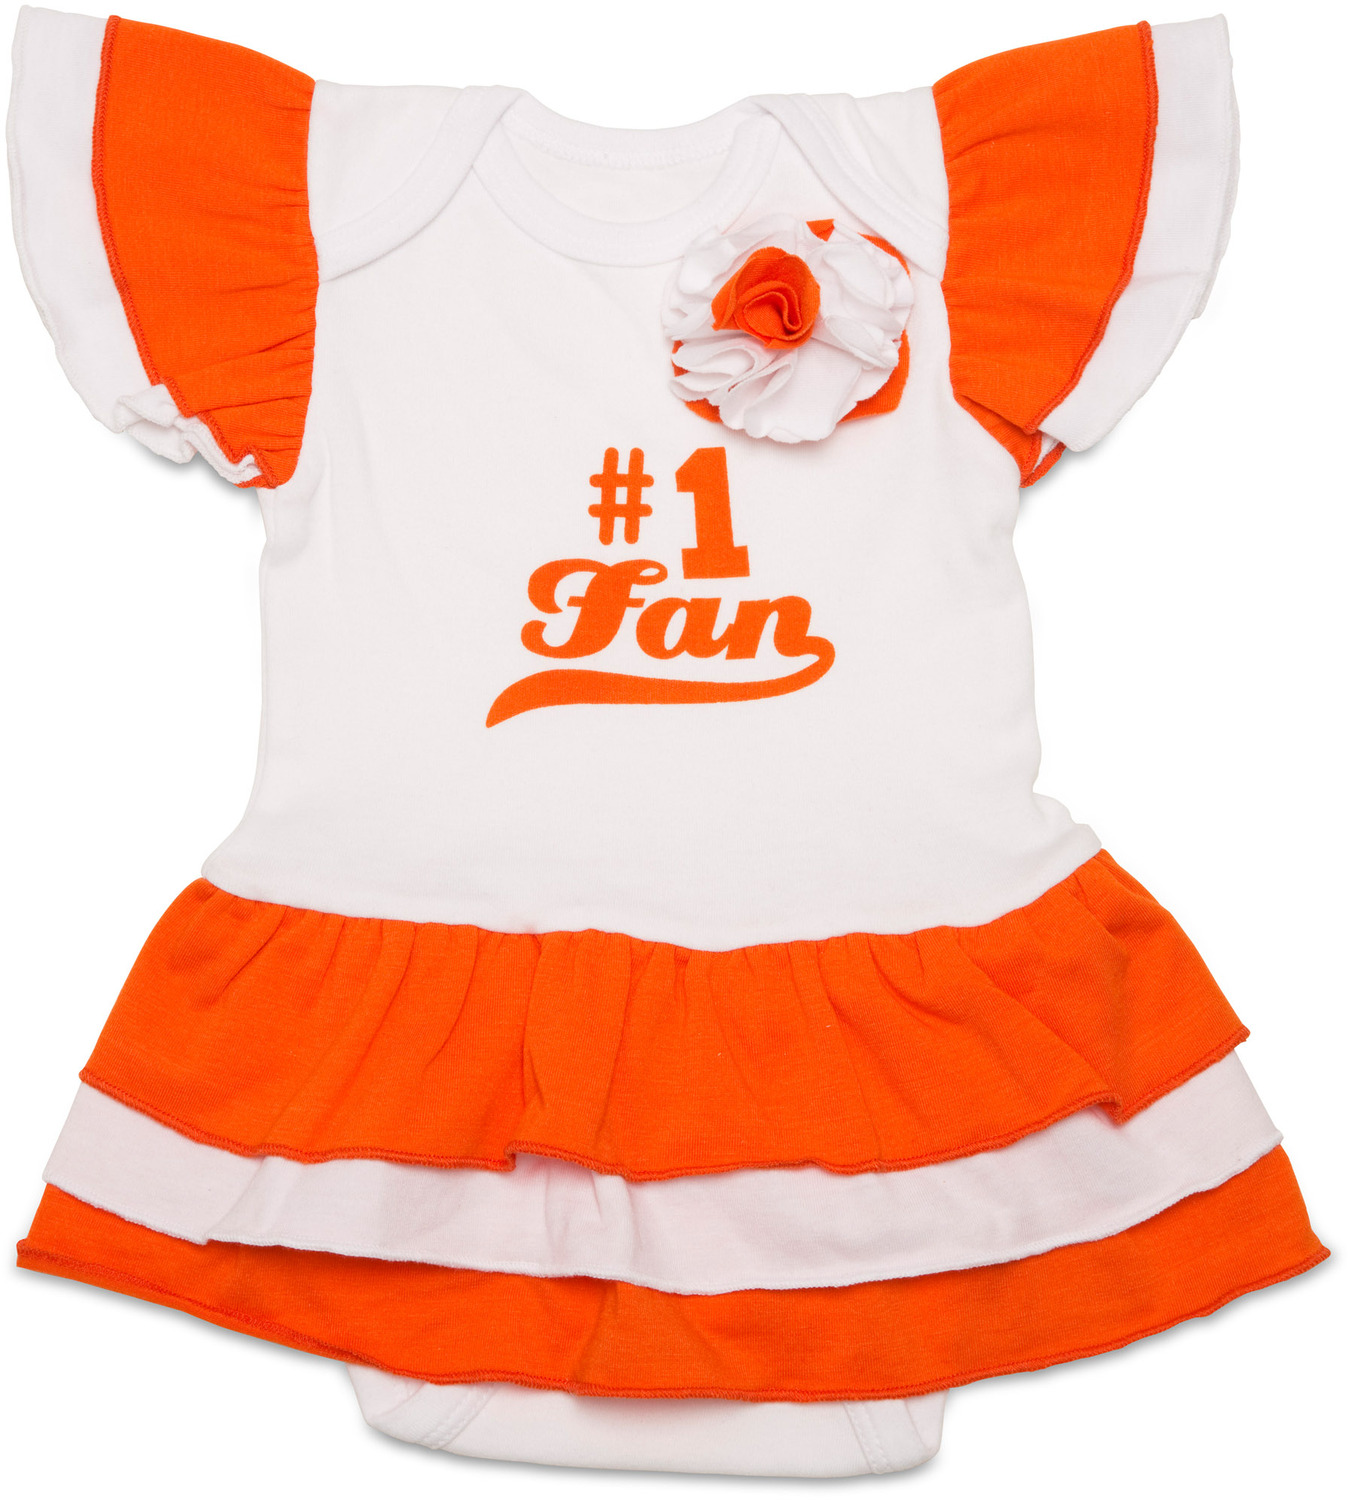 Orange & White by Itty Bitty & Pretty - Orange & White - #1 Fan Onesie Dress (0-6 Months)
